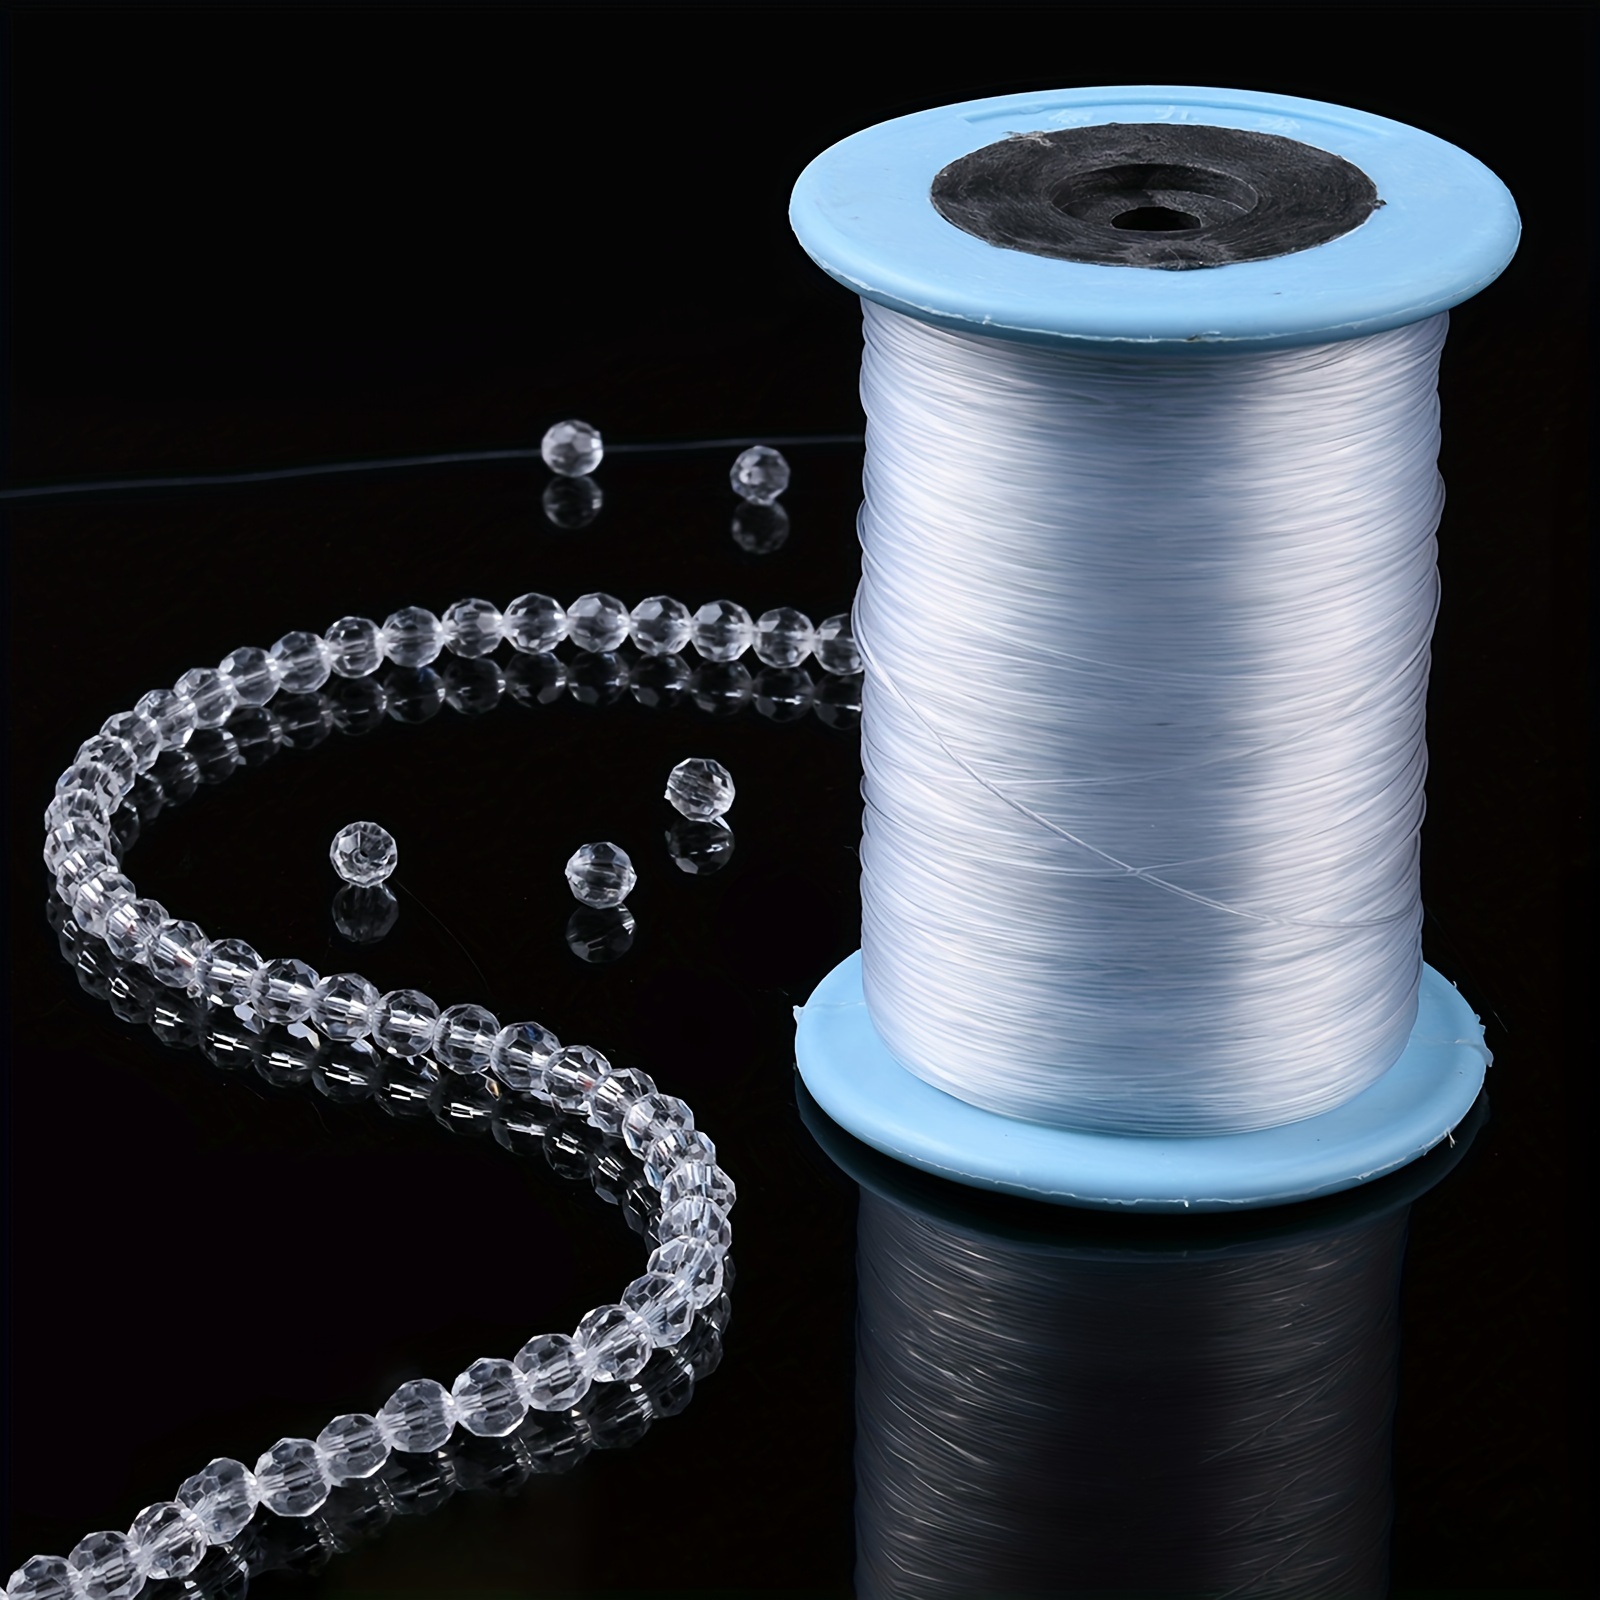 Lot de 10 rouleaux de fil en nylon pour perles - 1 mm - Couleurs mélangées  - Pour travaux manuels, fabrication de bijoux - Nœuds chinois - 50 mètres